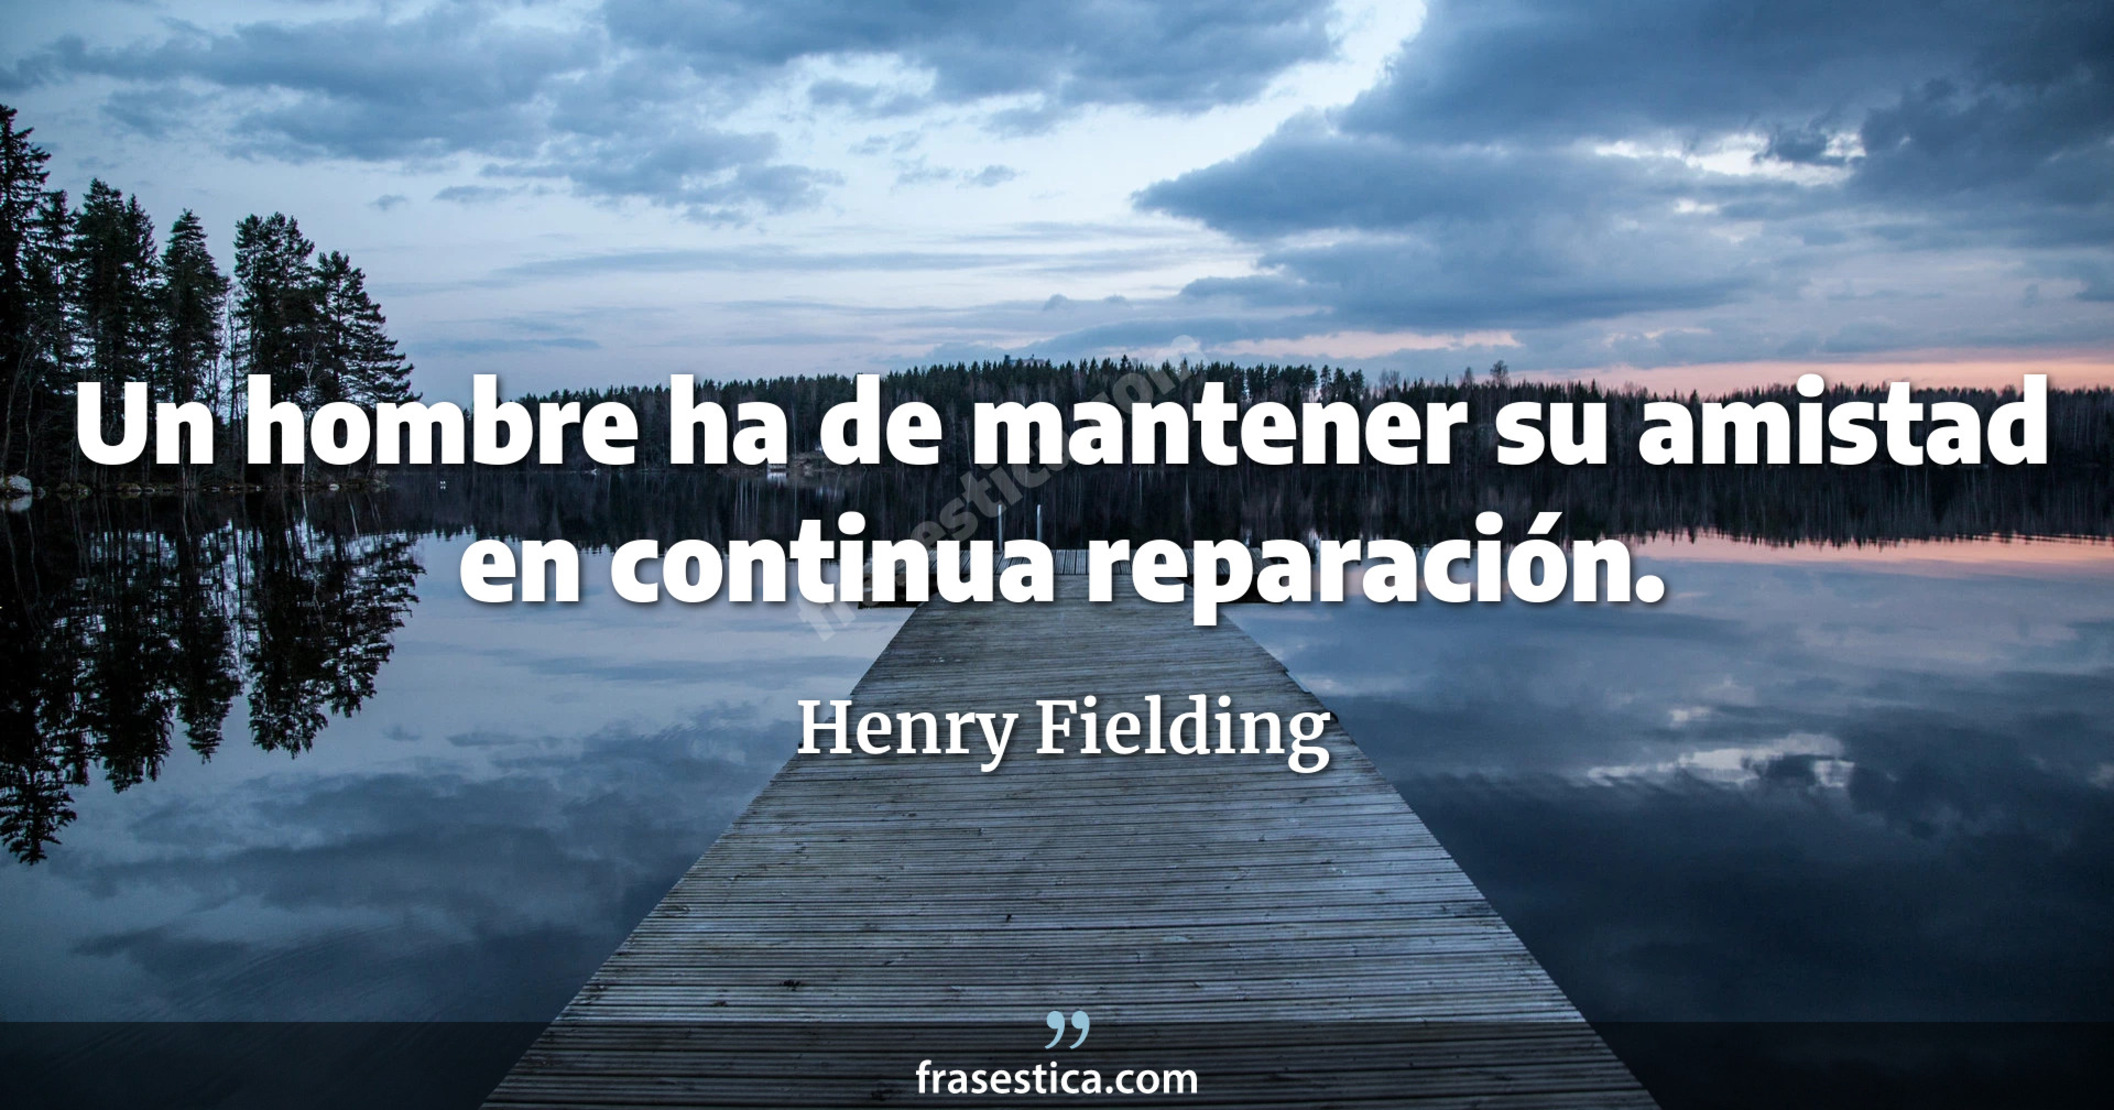 Un hombre ha de mantener su amistad en continua reparación. - Henry Fielding